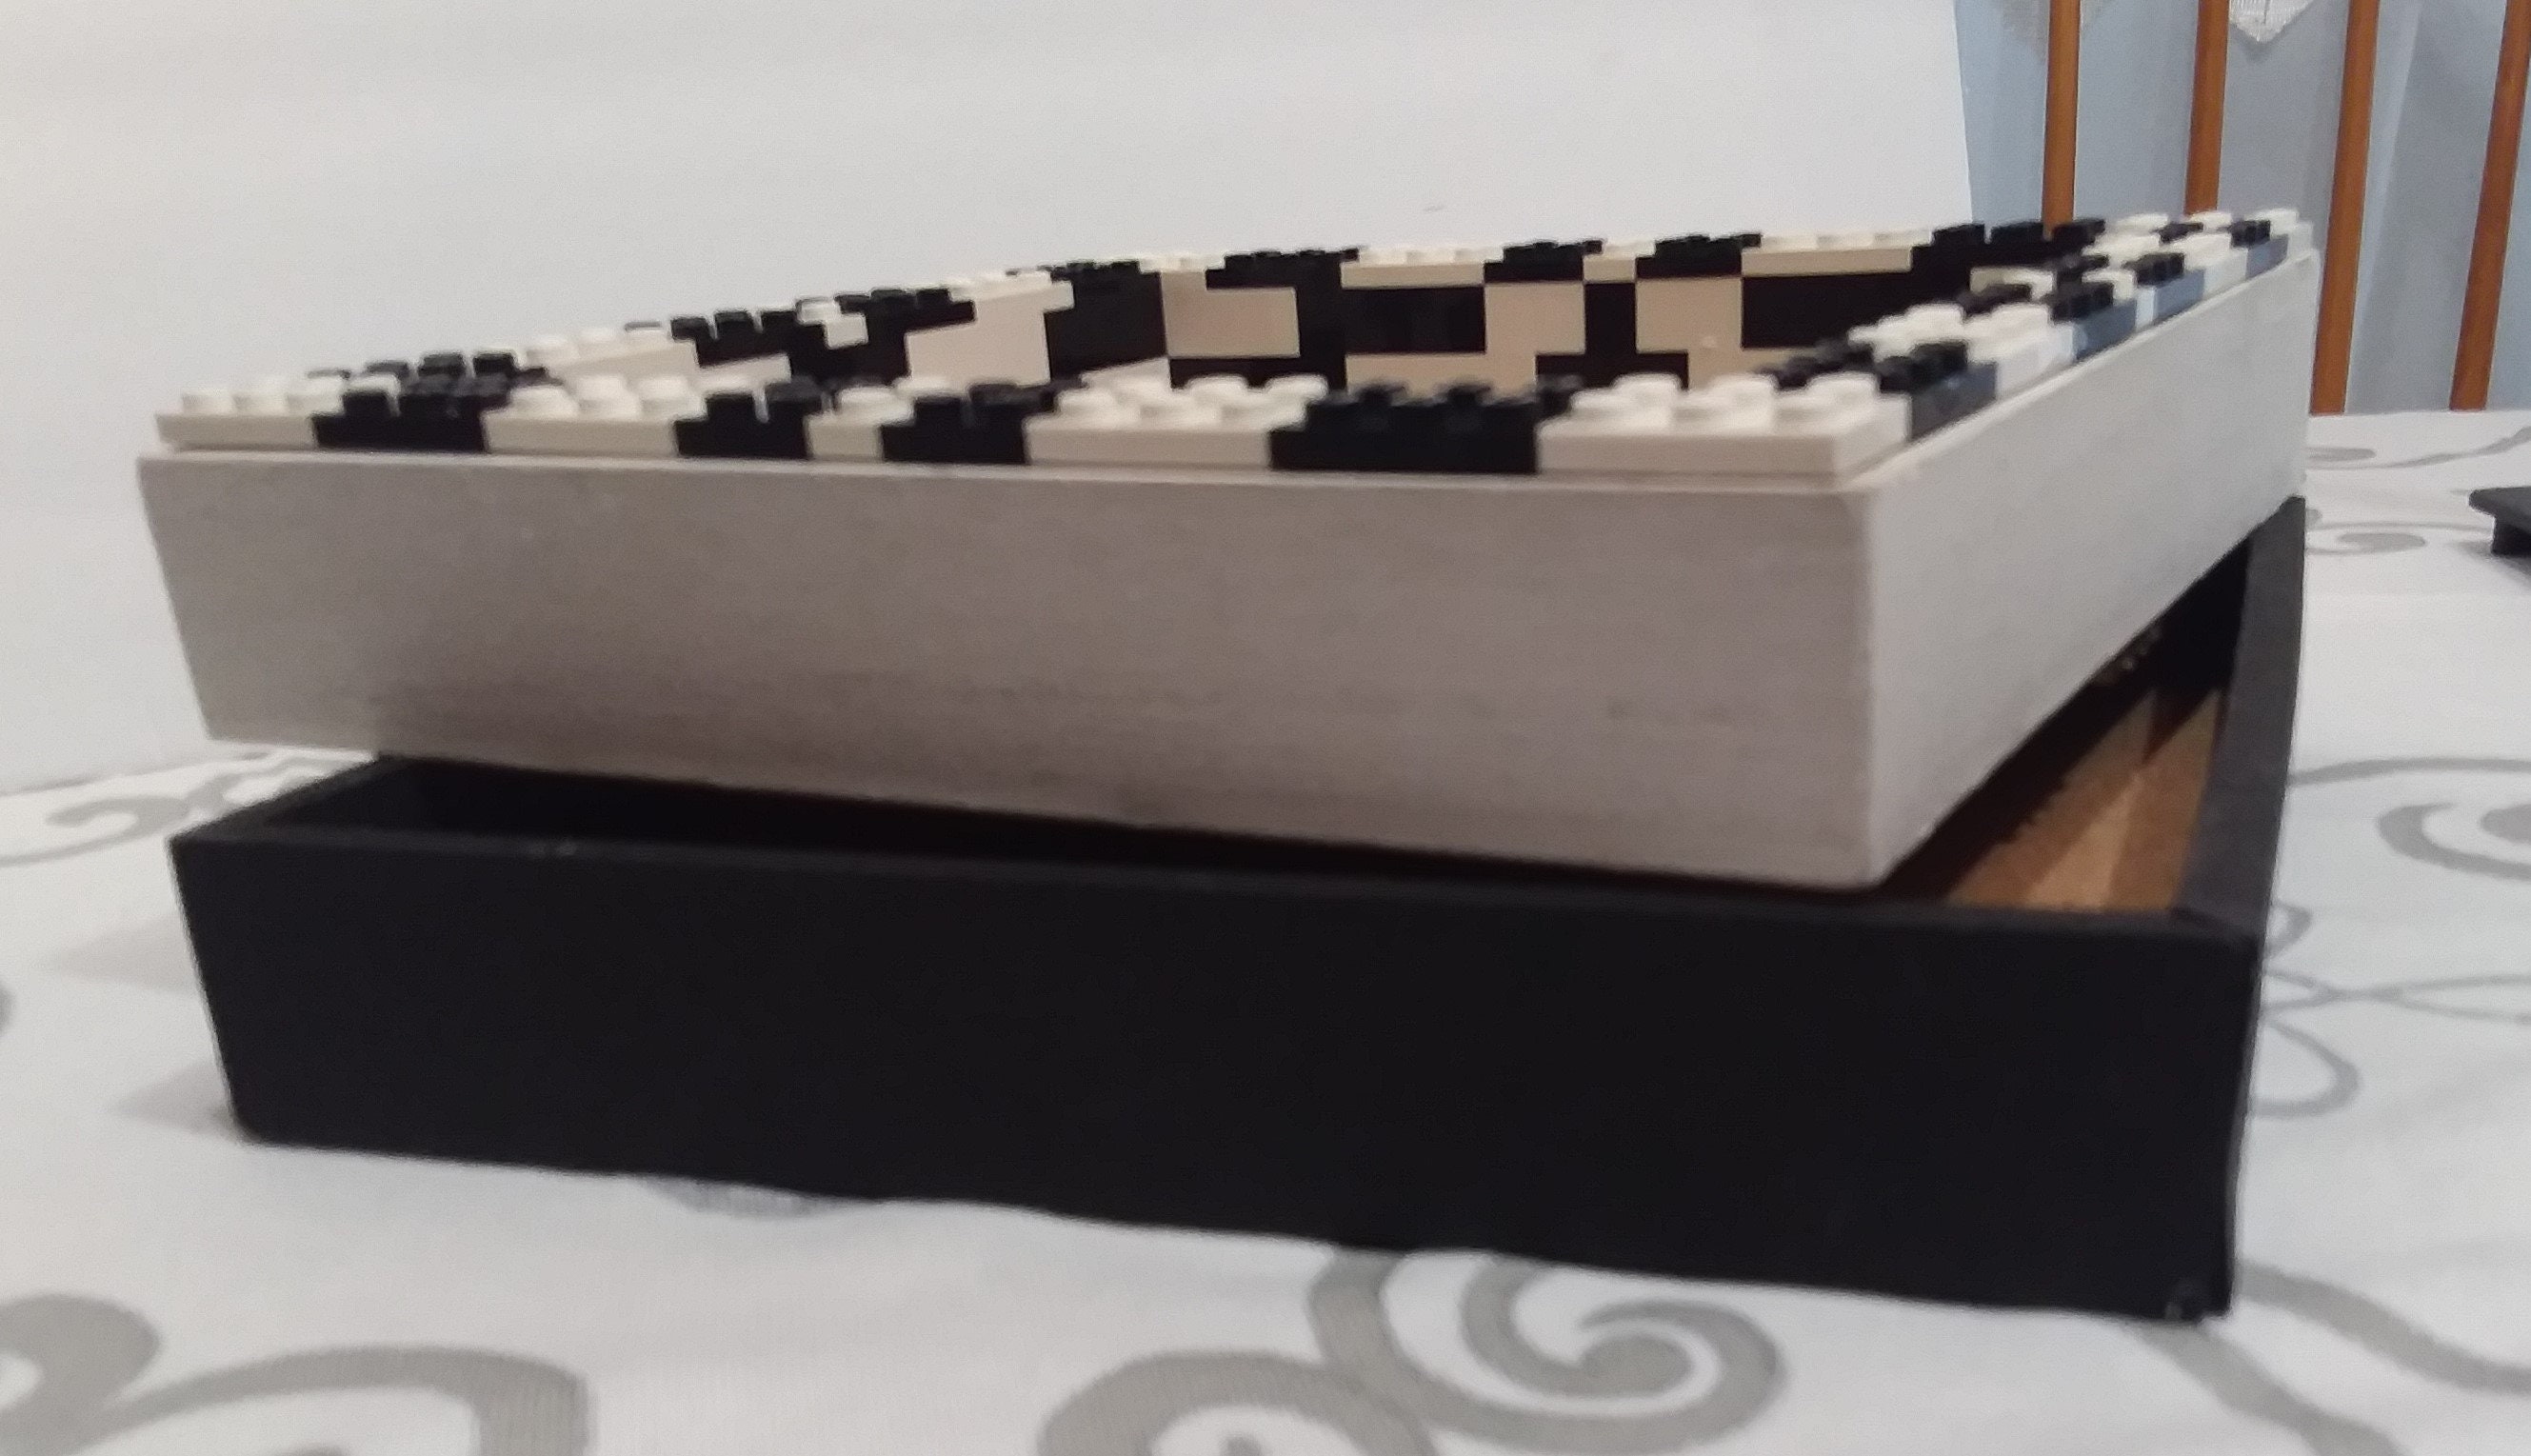 Brick-built Multi-color Desk Top Mini Cork Board Handmade With